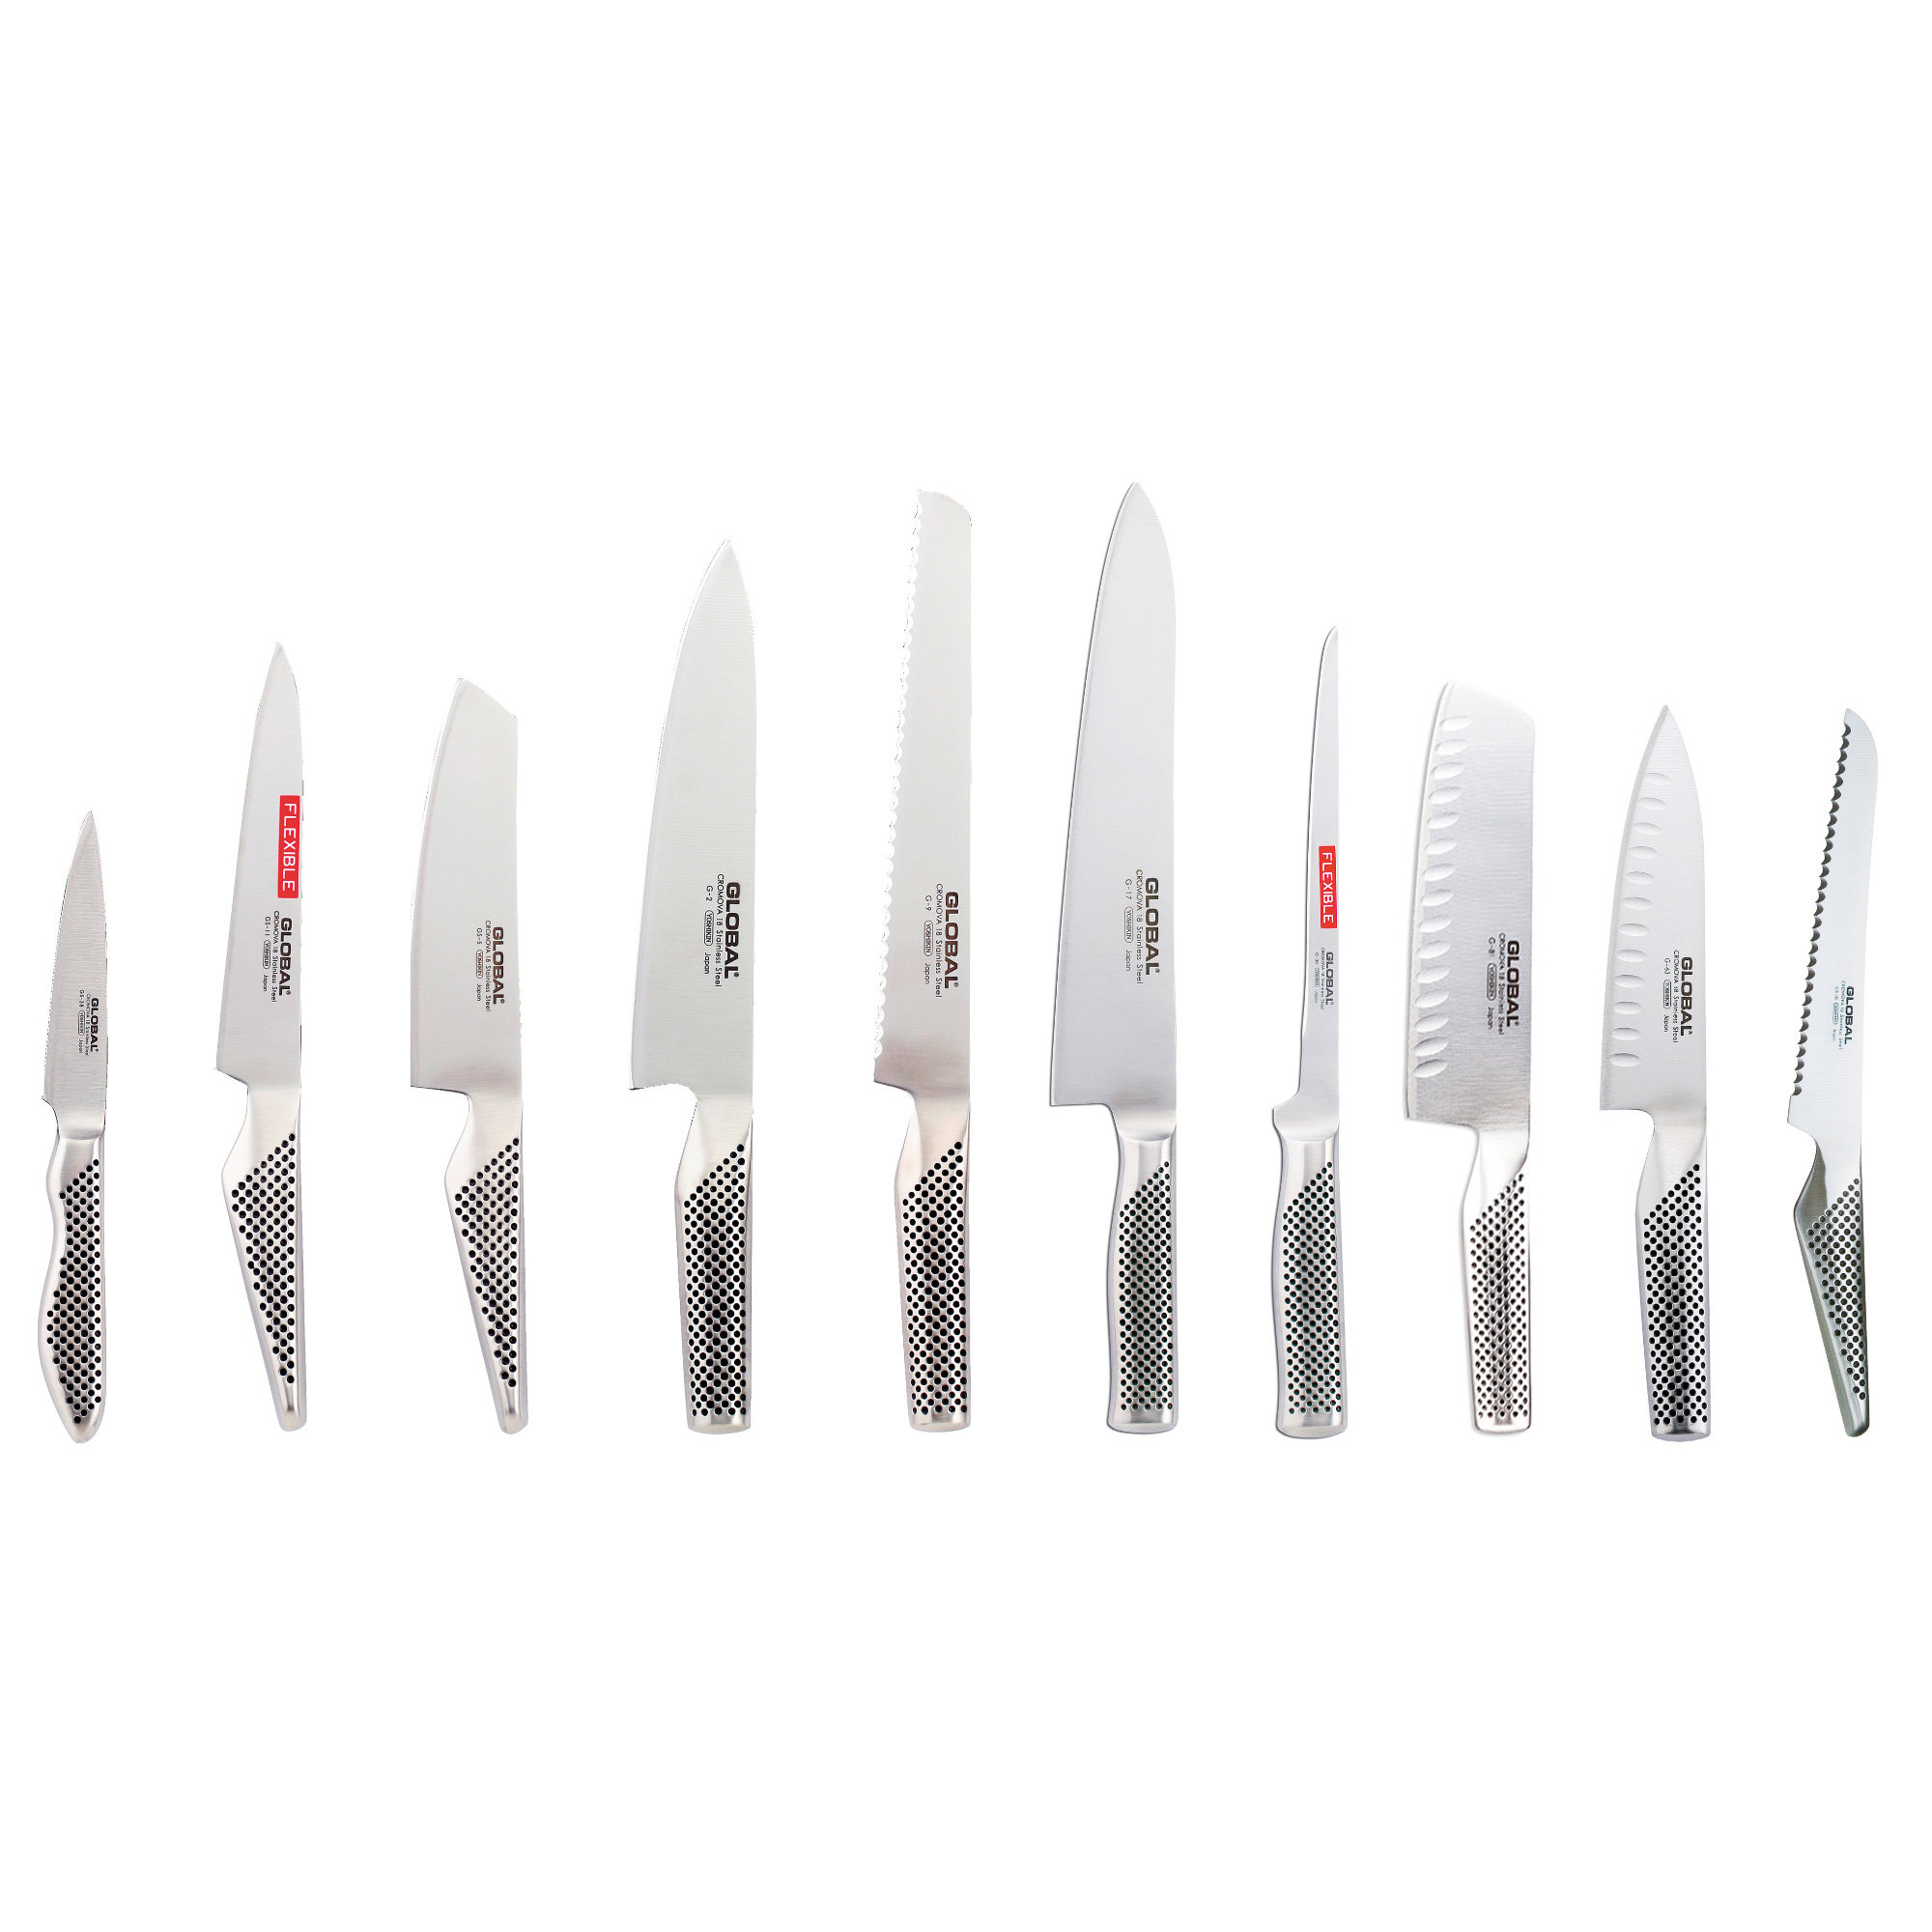 af Den anden dag Refinement Knivsæt med 10 knive fra Global » Det ultimative knivsæt